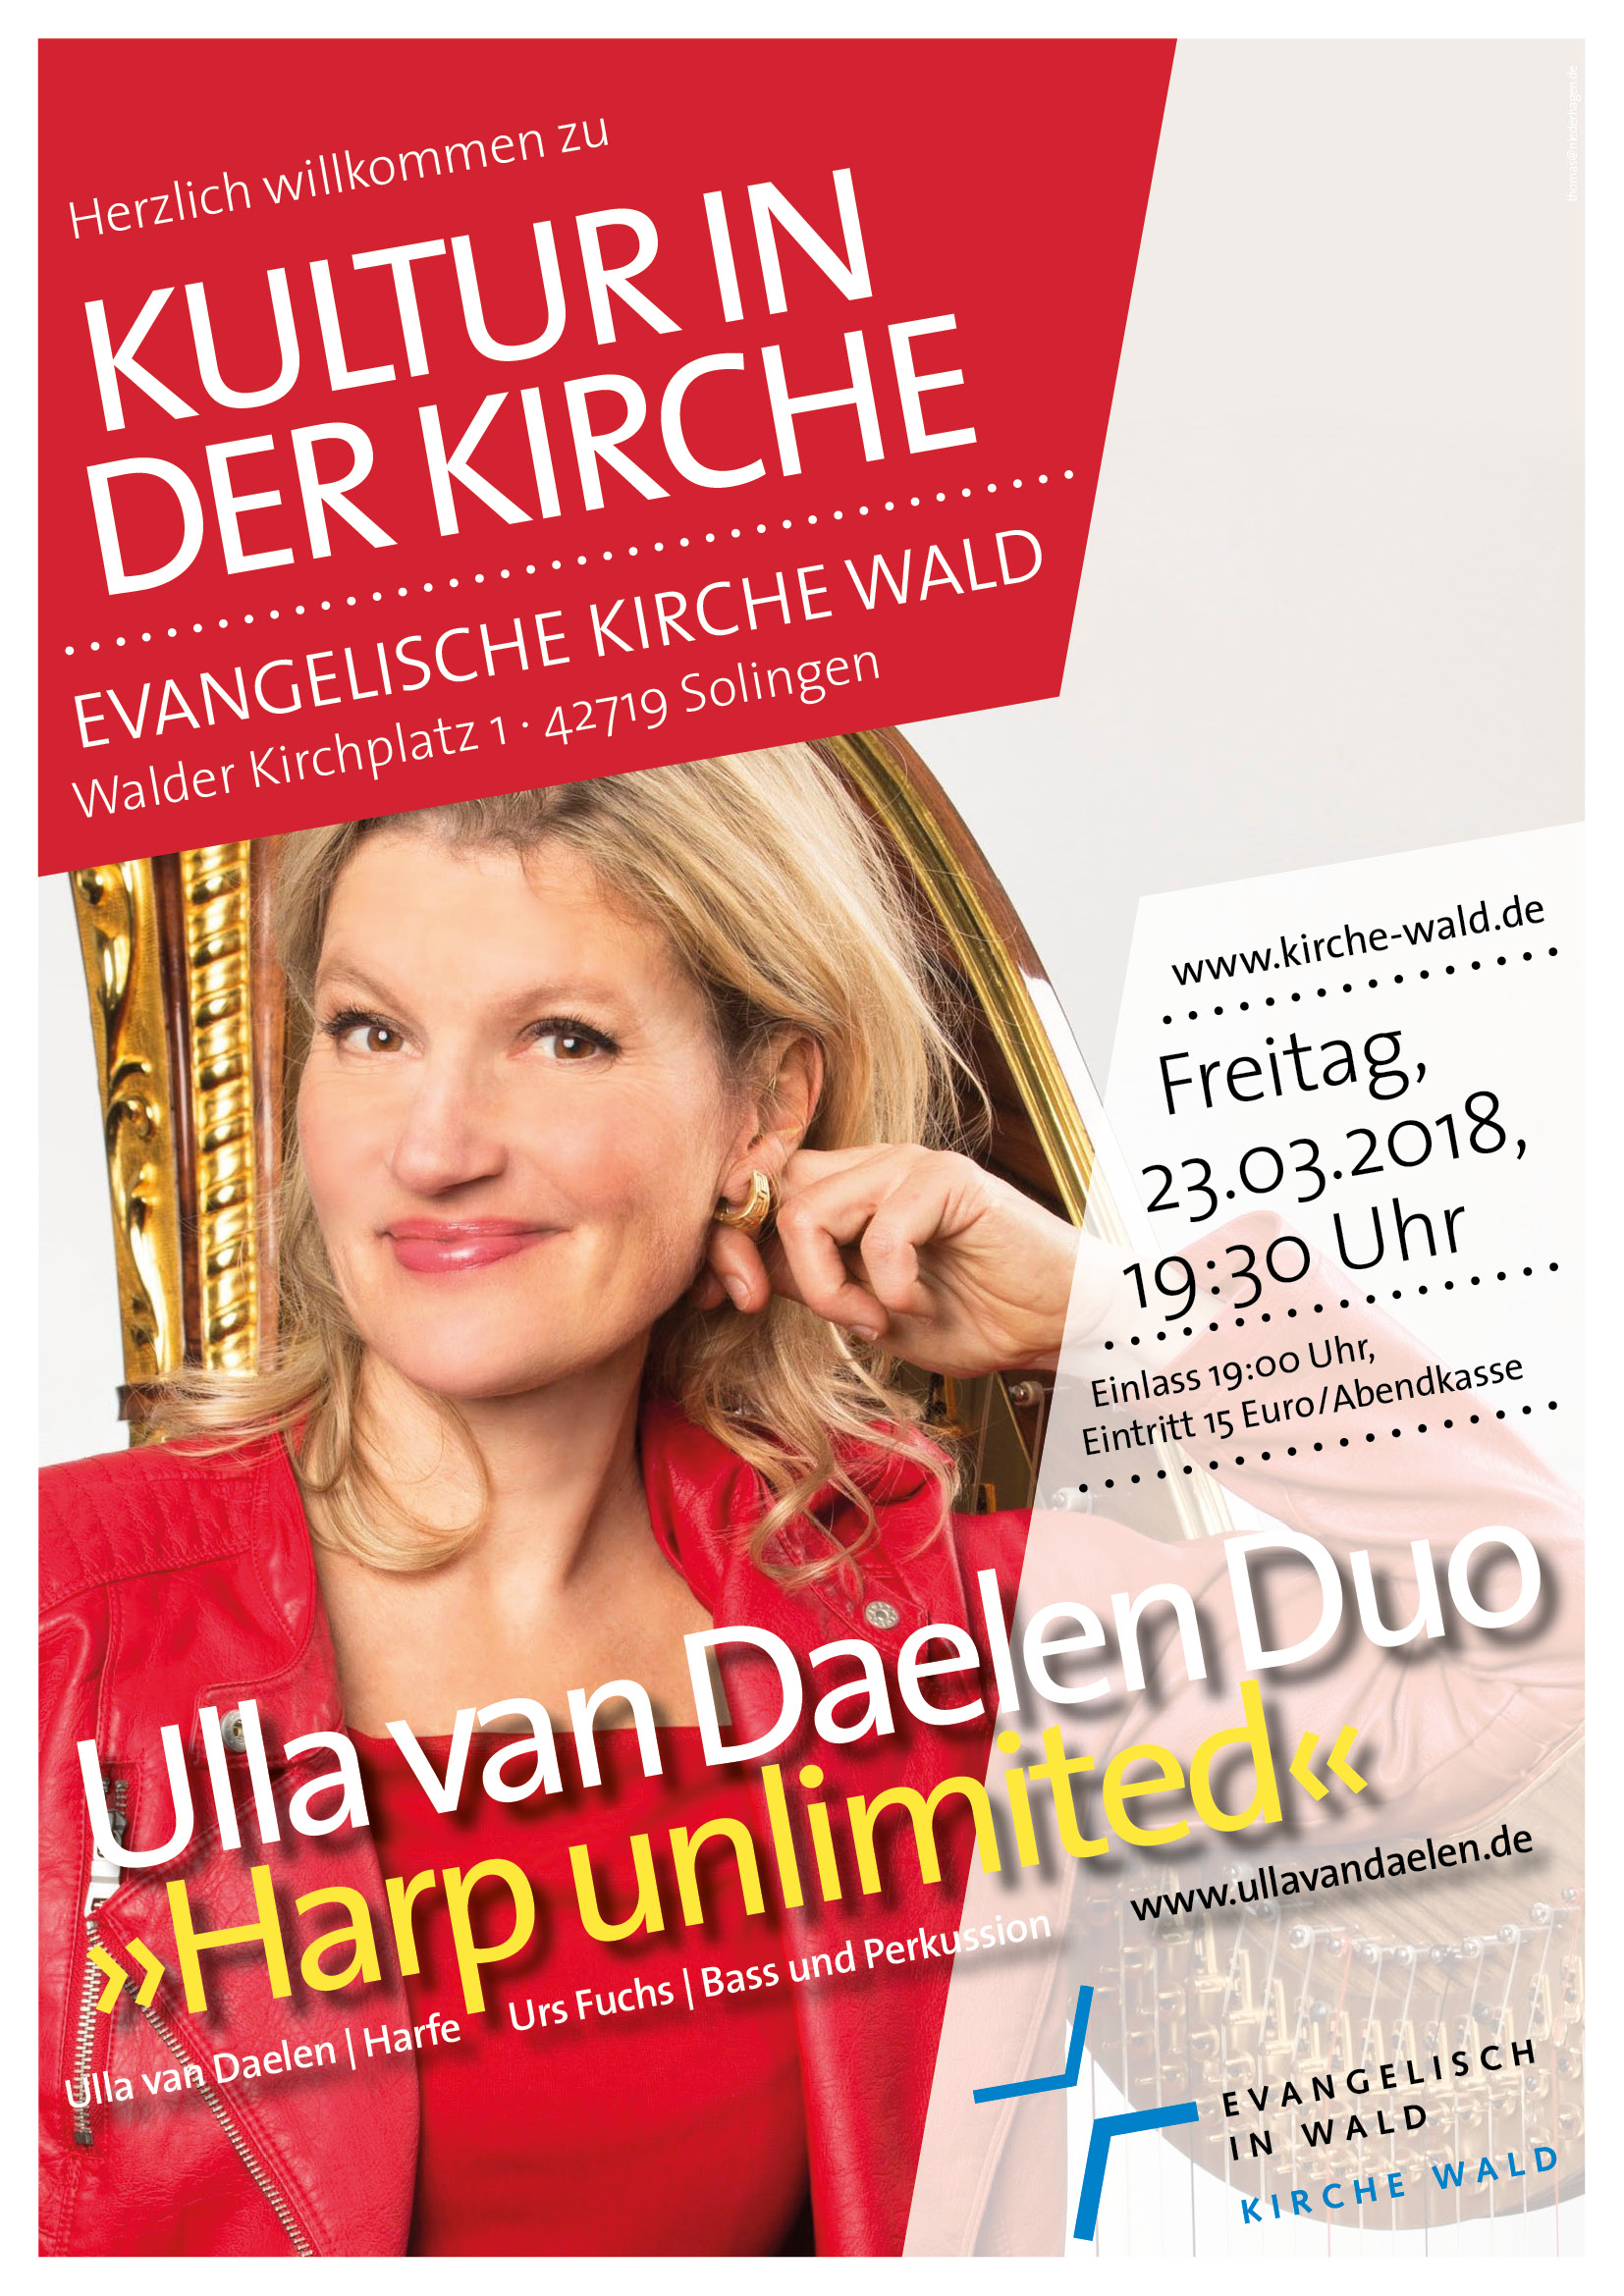 Ulla van Daelen Duo - Harp unlimited 